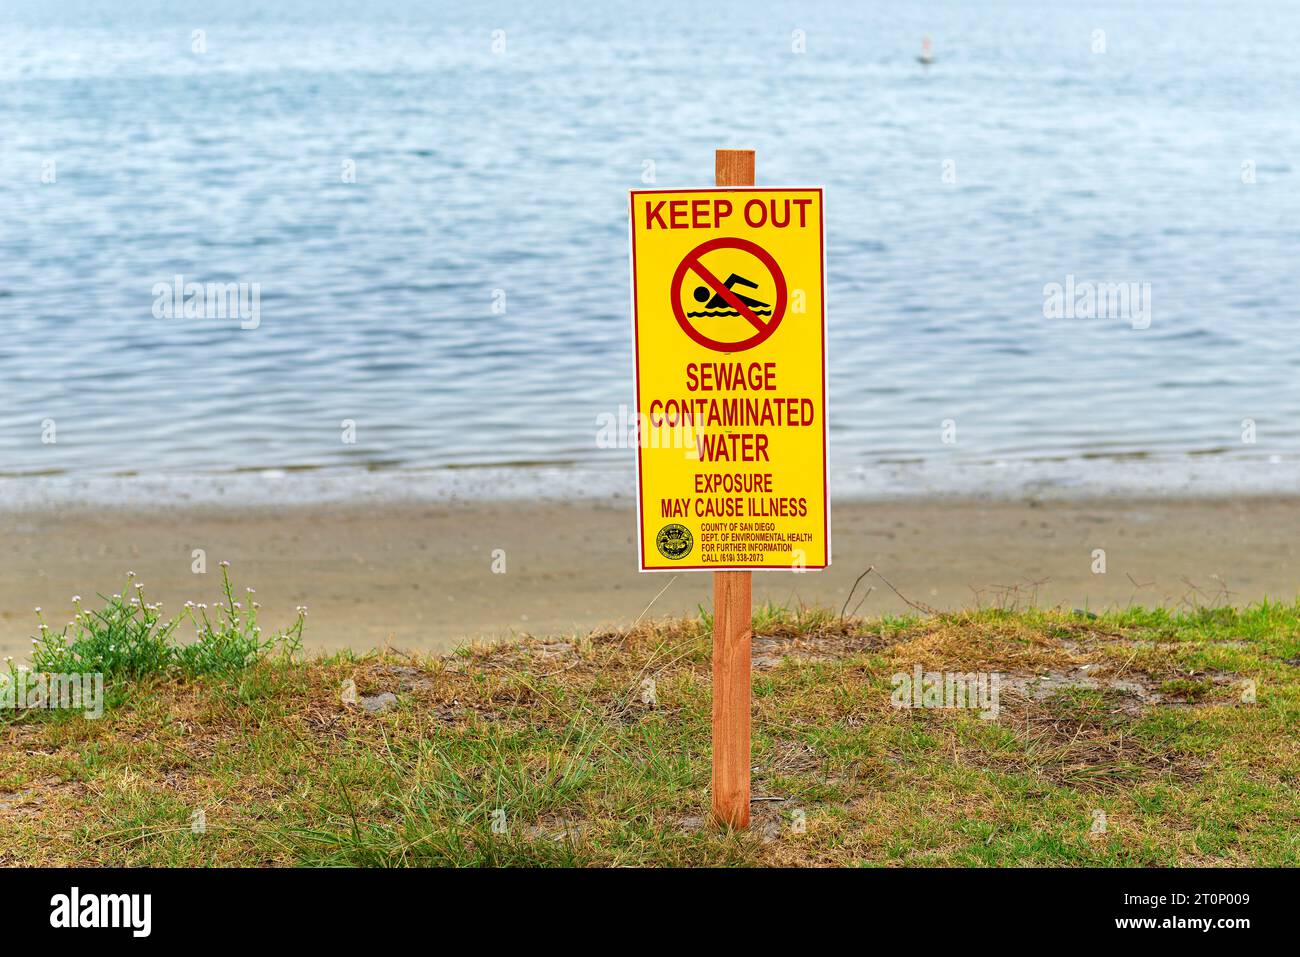 Mission Bay, San Diego, Kalifornien, Vereinigte Staaten (USA) - Aushalten, kein Schwimmen, Abwasser verunreinigtes Wasser, Exposition kann Krankheiten verursachen Warnschild Stockfoto